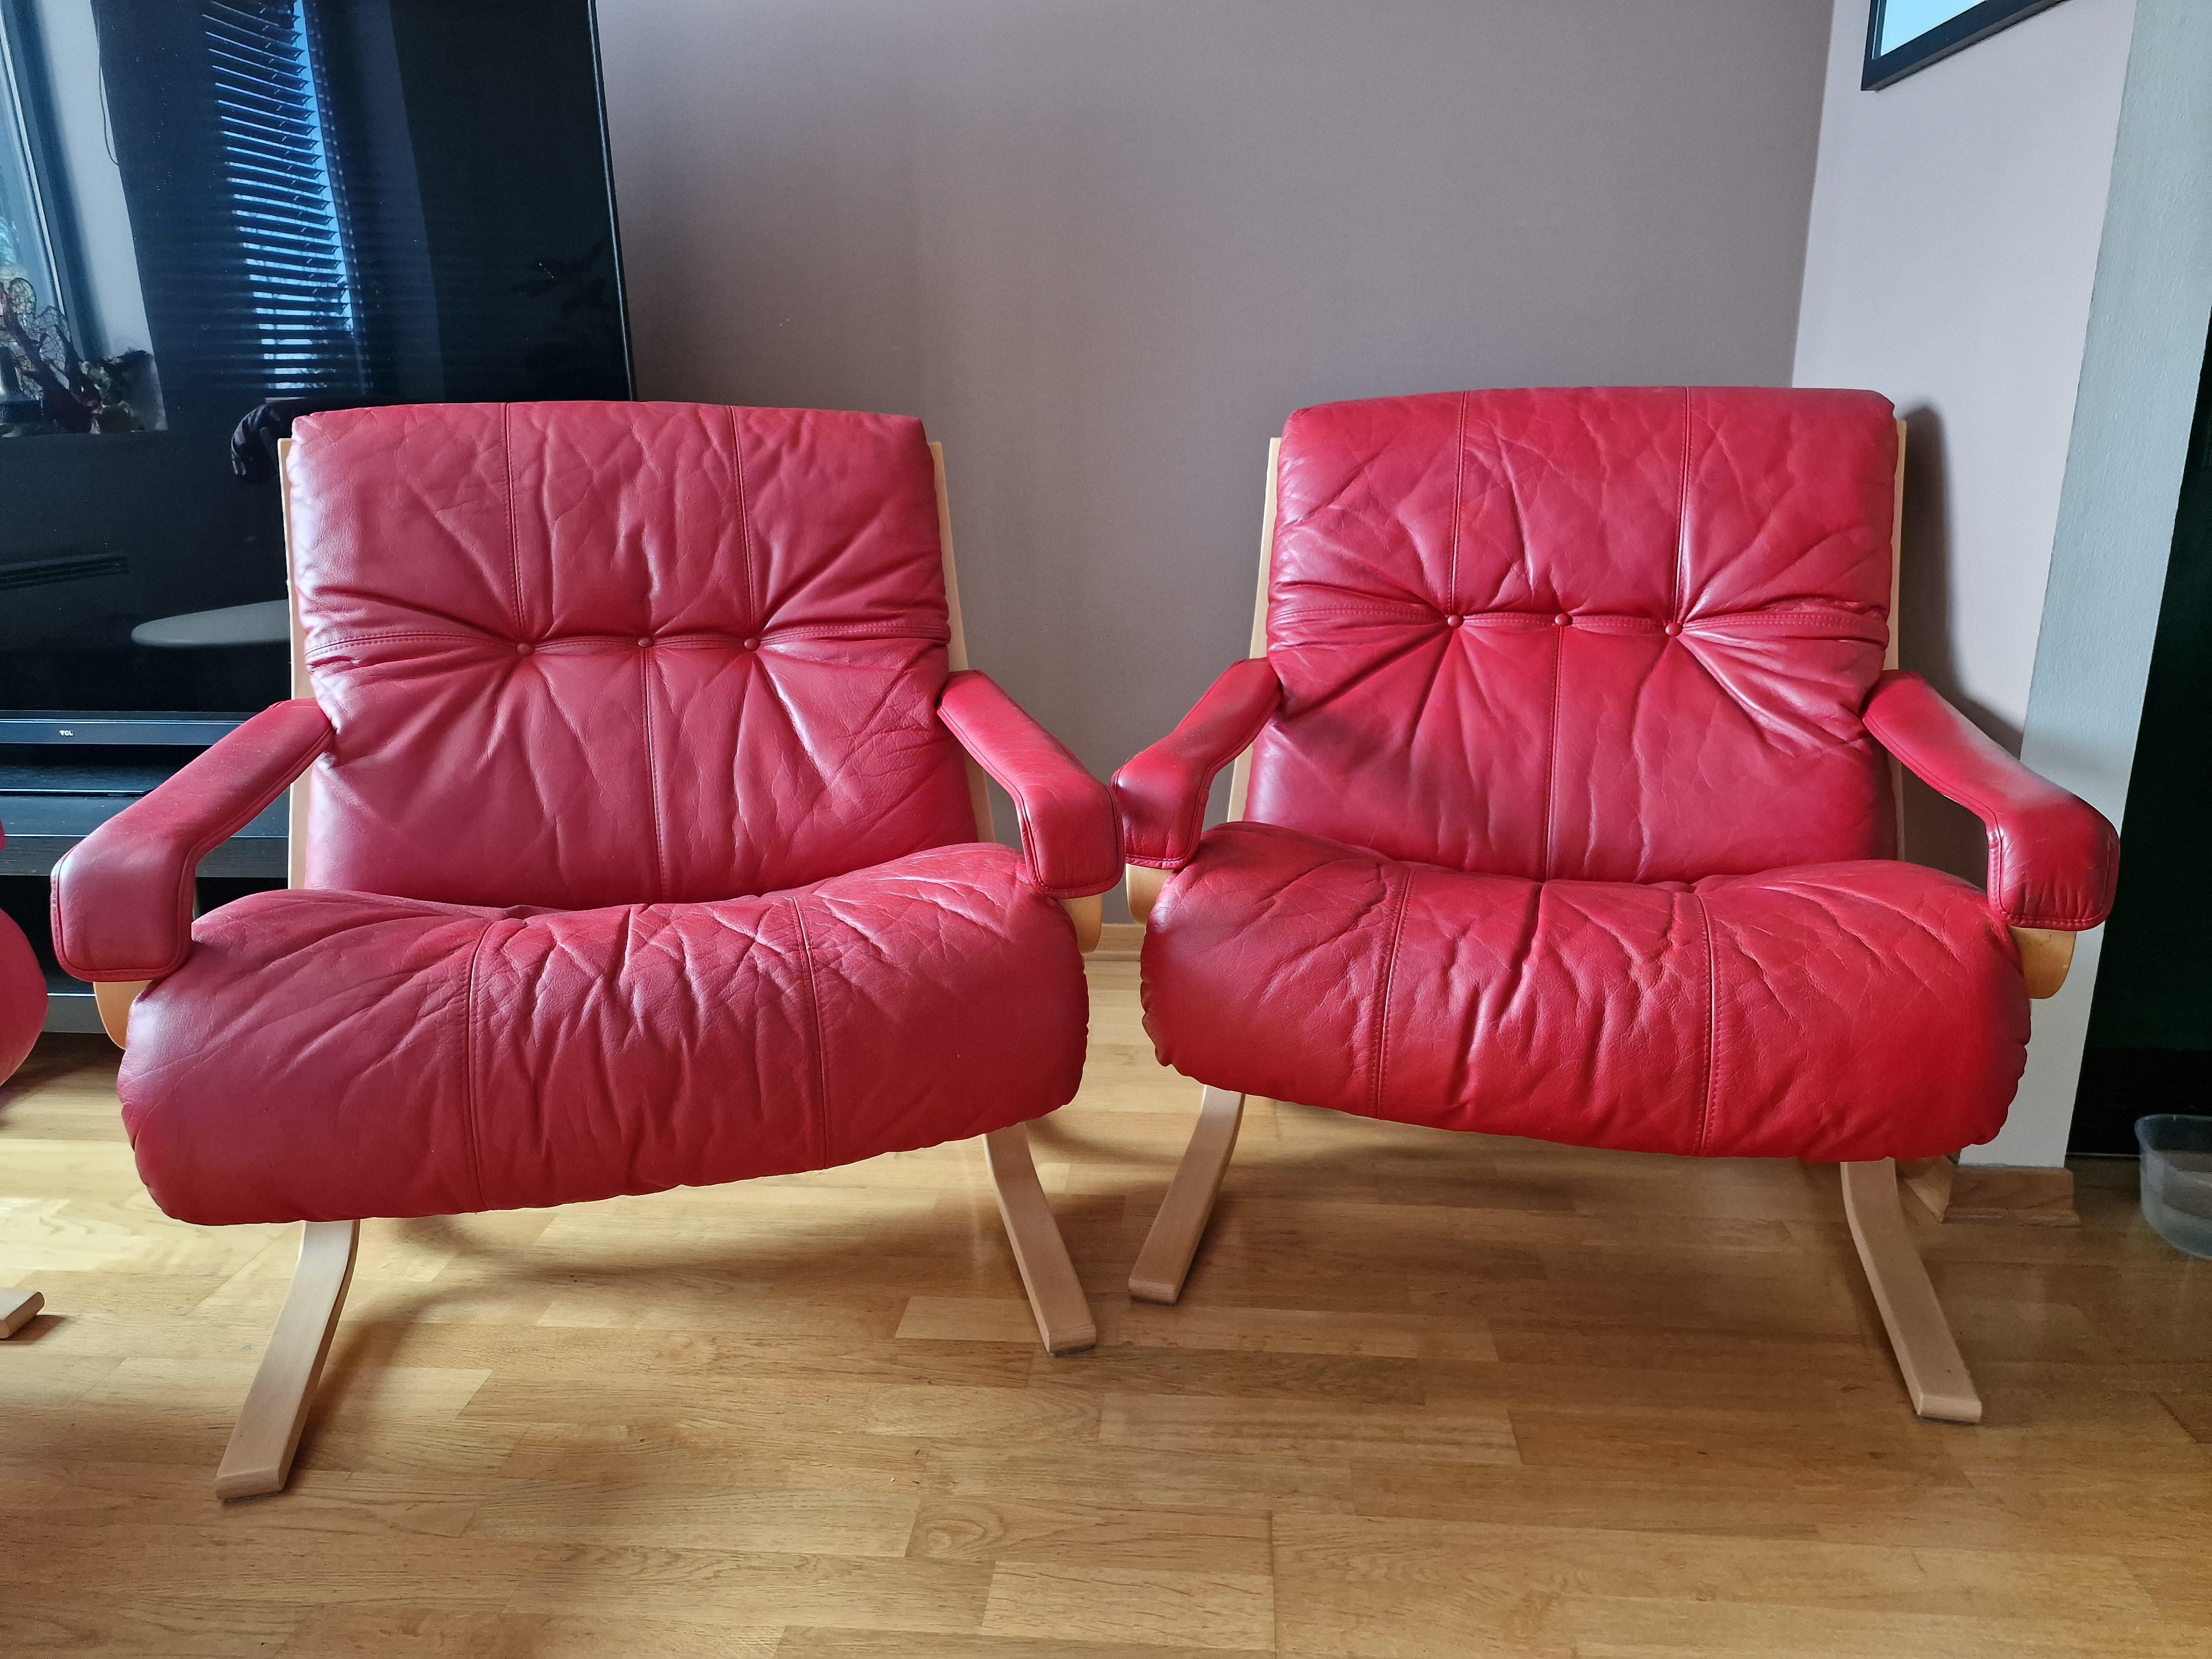 Chaise longue Siesta du milieu du siècle dernier, créée par le designer norvégien Ingmar Relling pour Westnofa Furniture. Formes en bois courbé, cuir rouge. 
Ingmar Relling a remporté le premier prix au concours du Norwegian Furniture Councill en